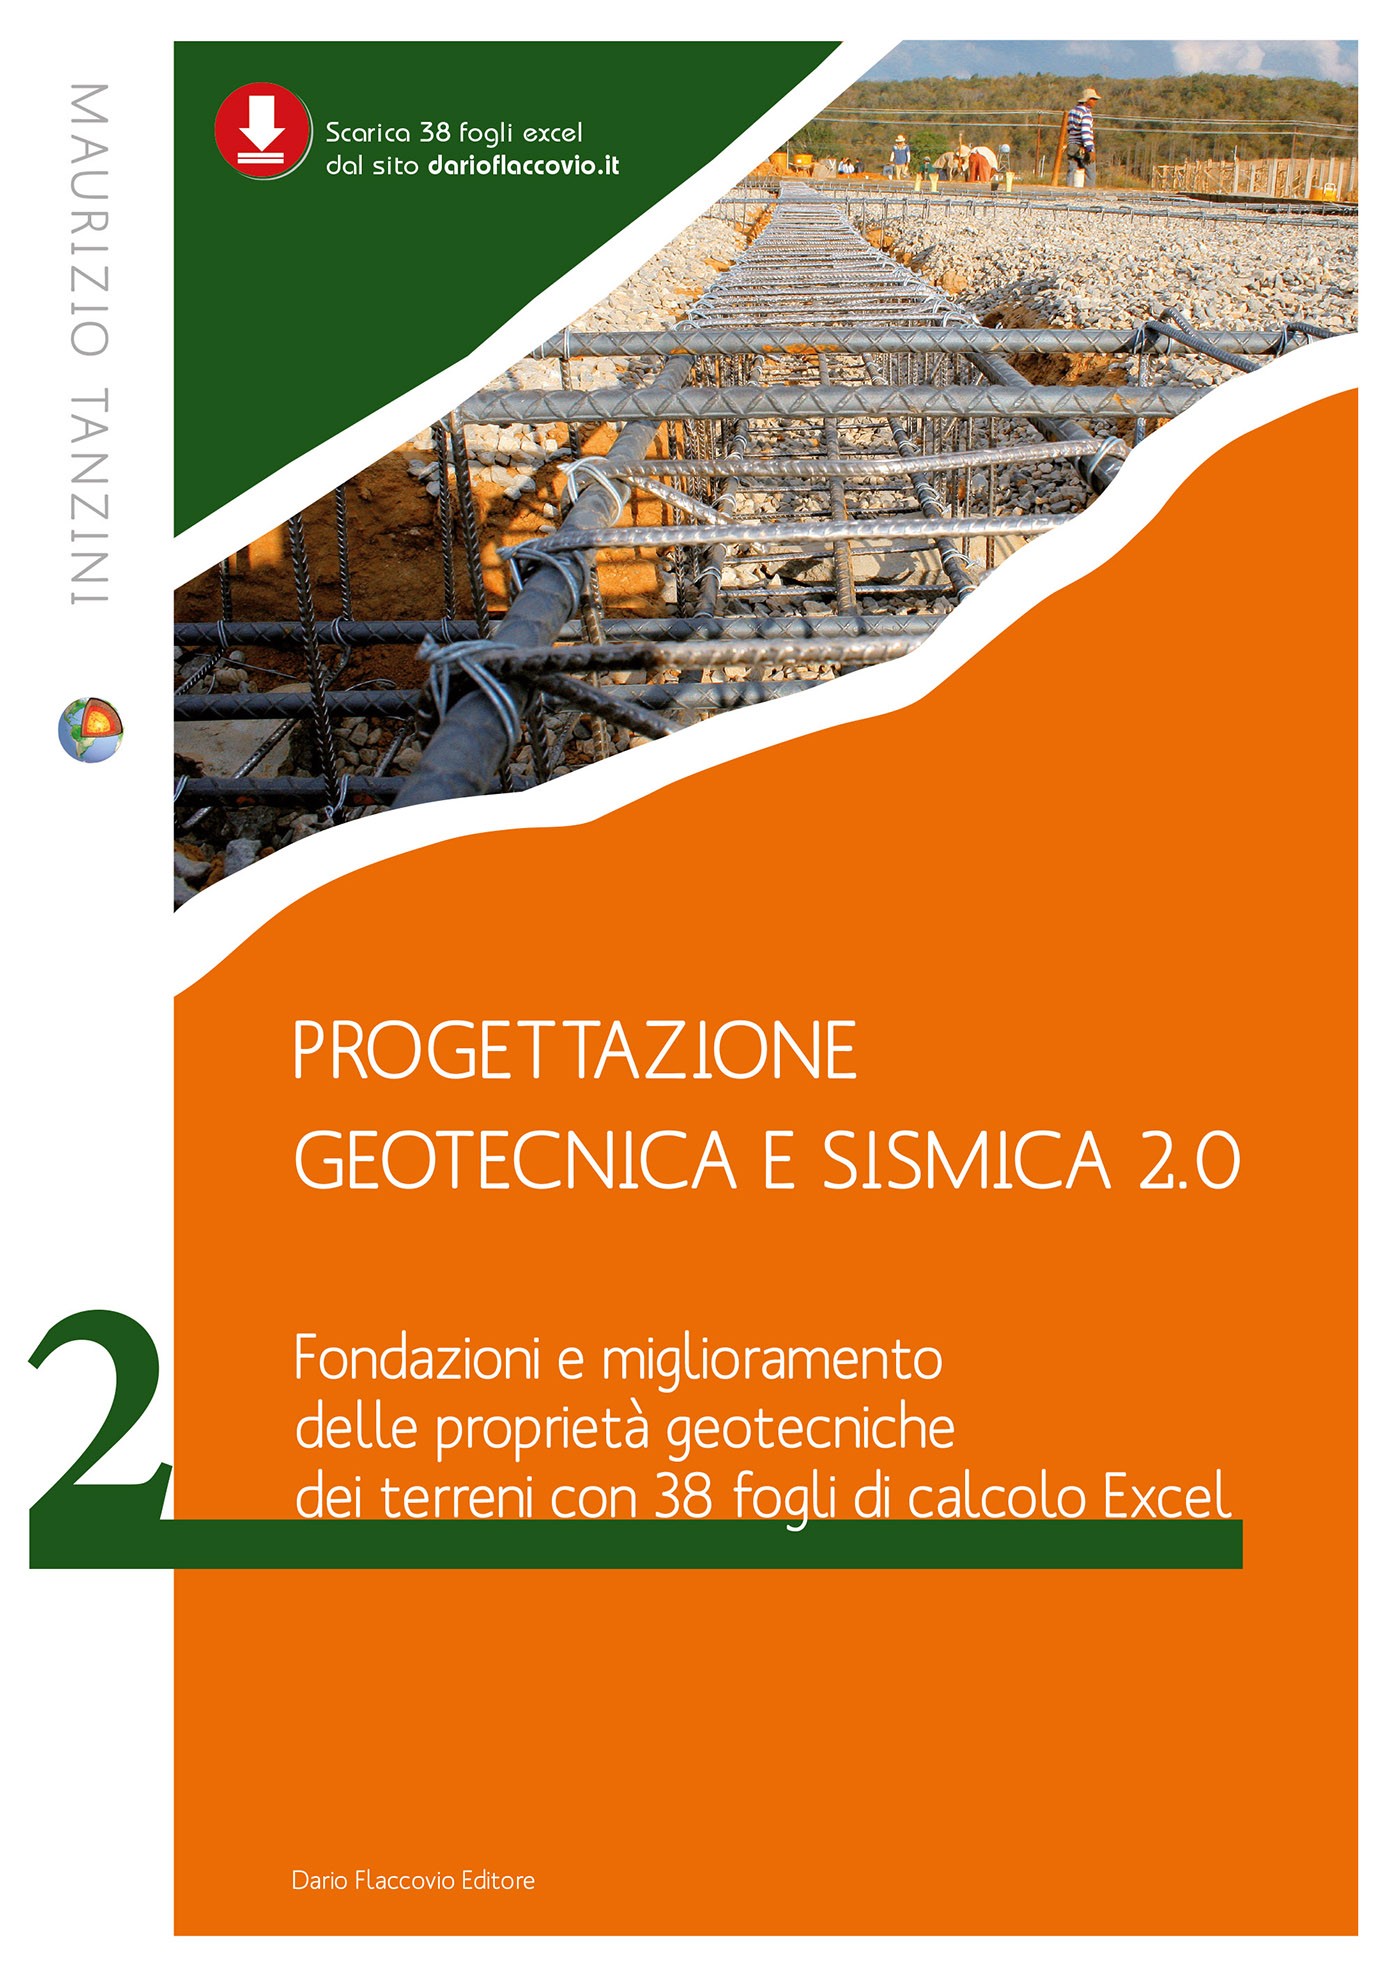 Progettazione geotecnica e sismica 2.0 - Volume 2. Fondazioni e miglioramento delle proprietà geotecniche dei terreni - Librerie.coop